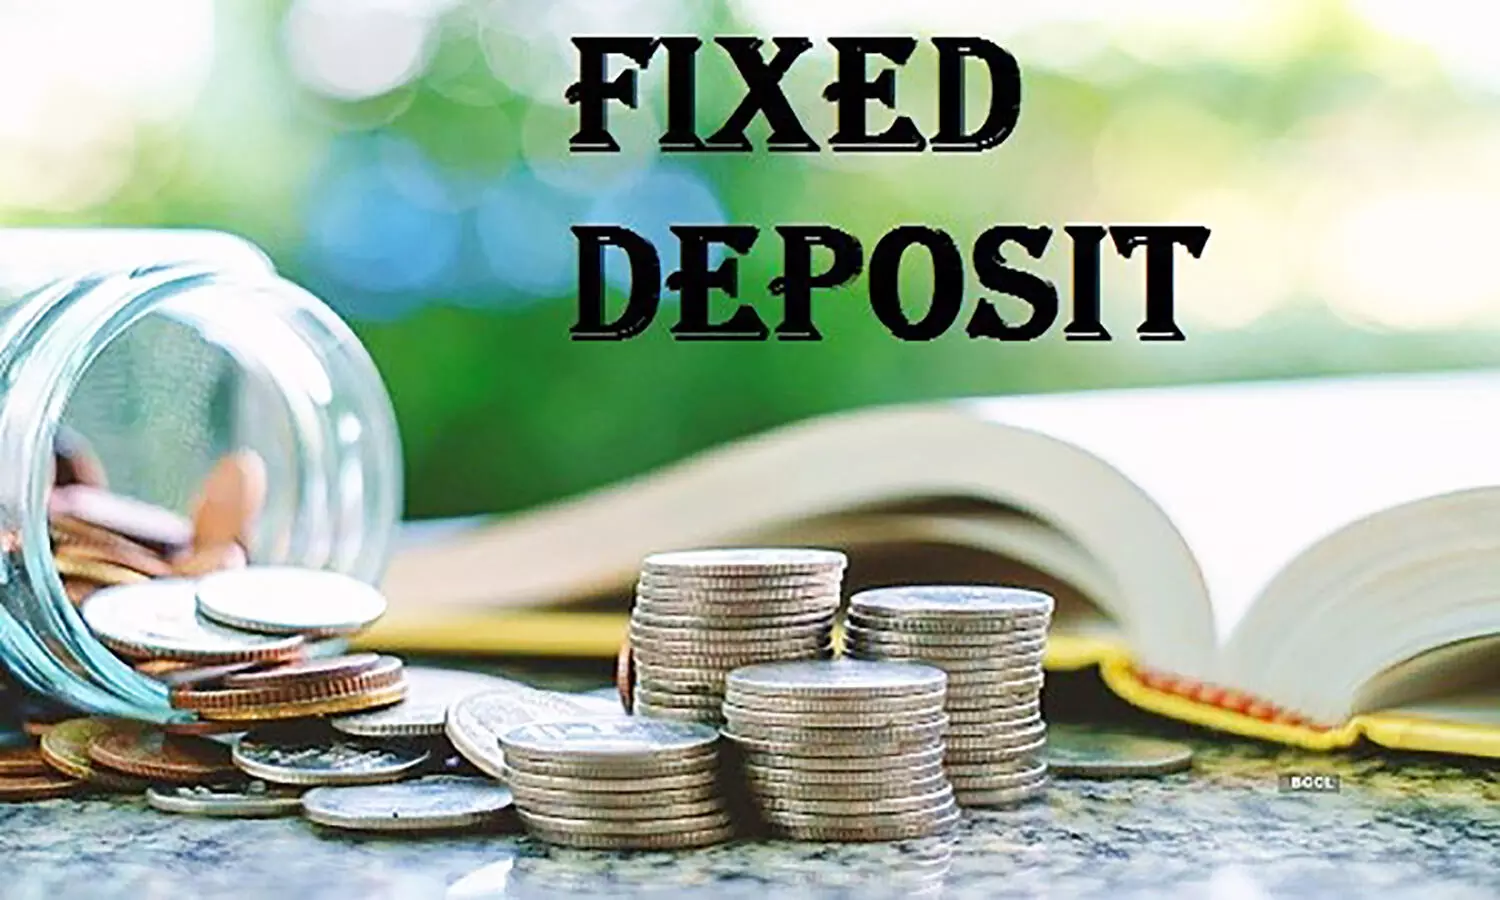 Bank Fixed Deposits News: बैंकों ने बढ़ाई एफडी की ब्याज दरें, ज्यादा फायदा कहां मिलेगा जान लें